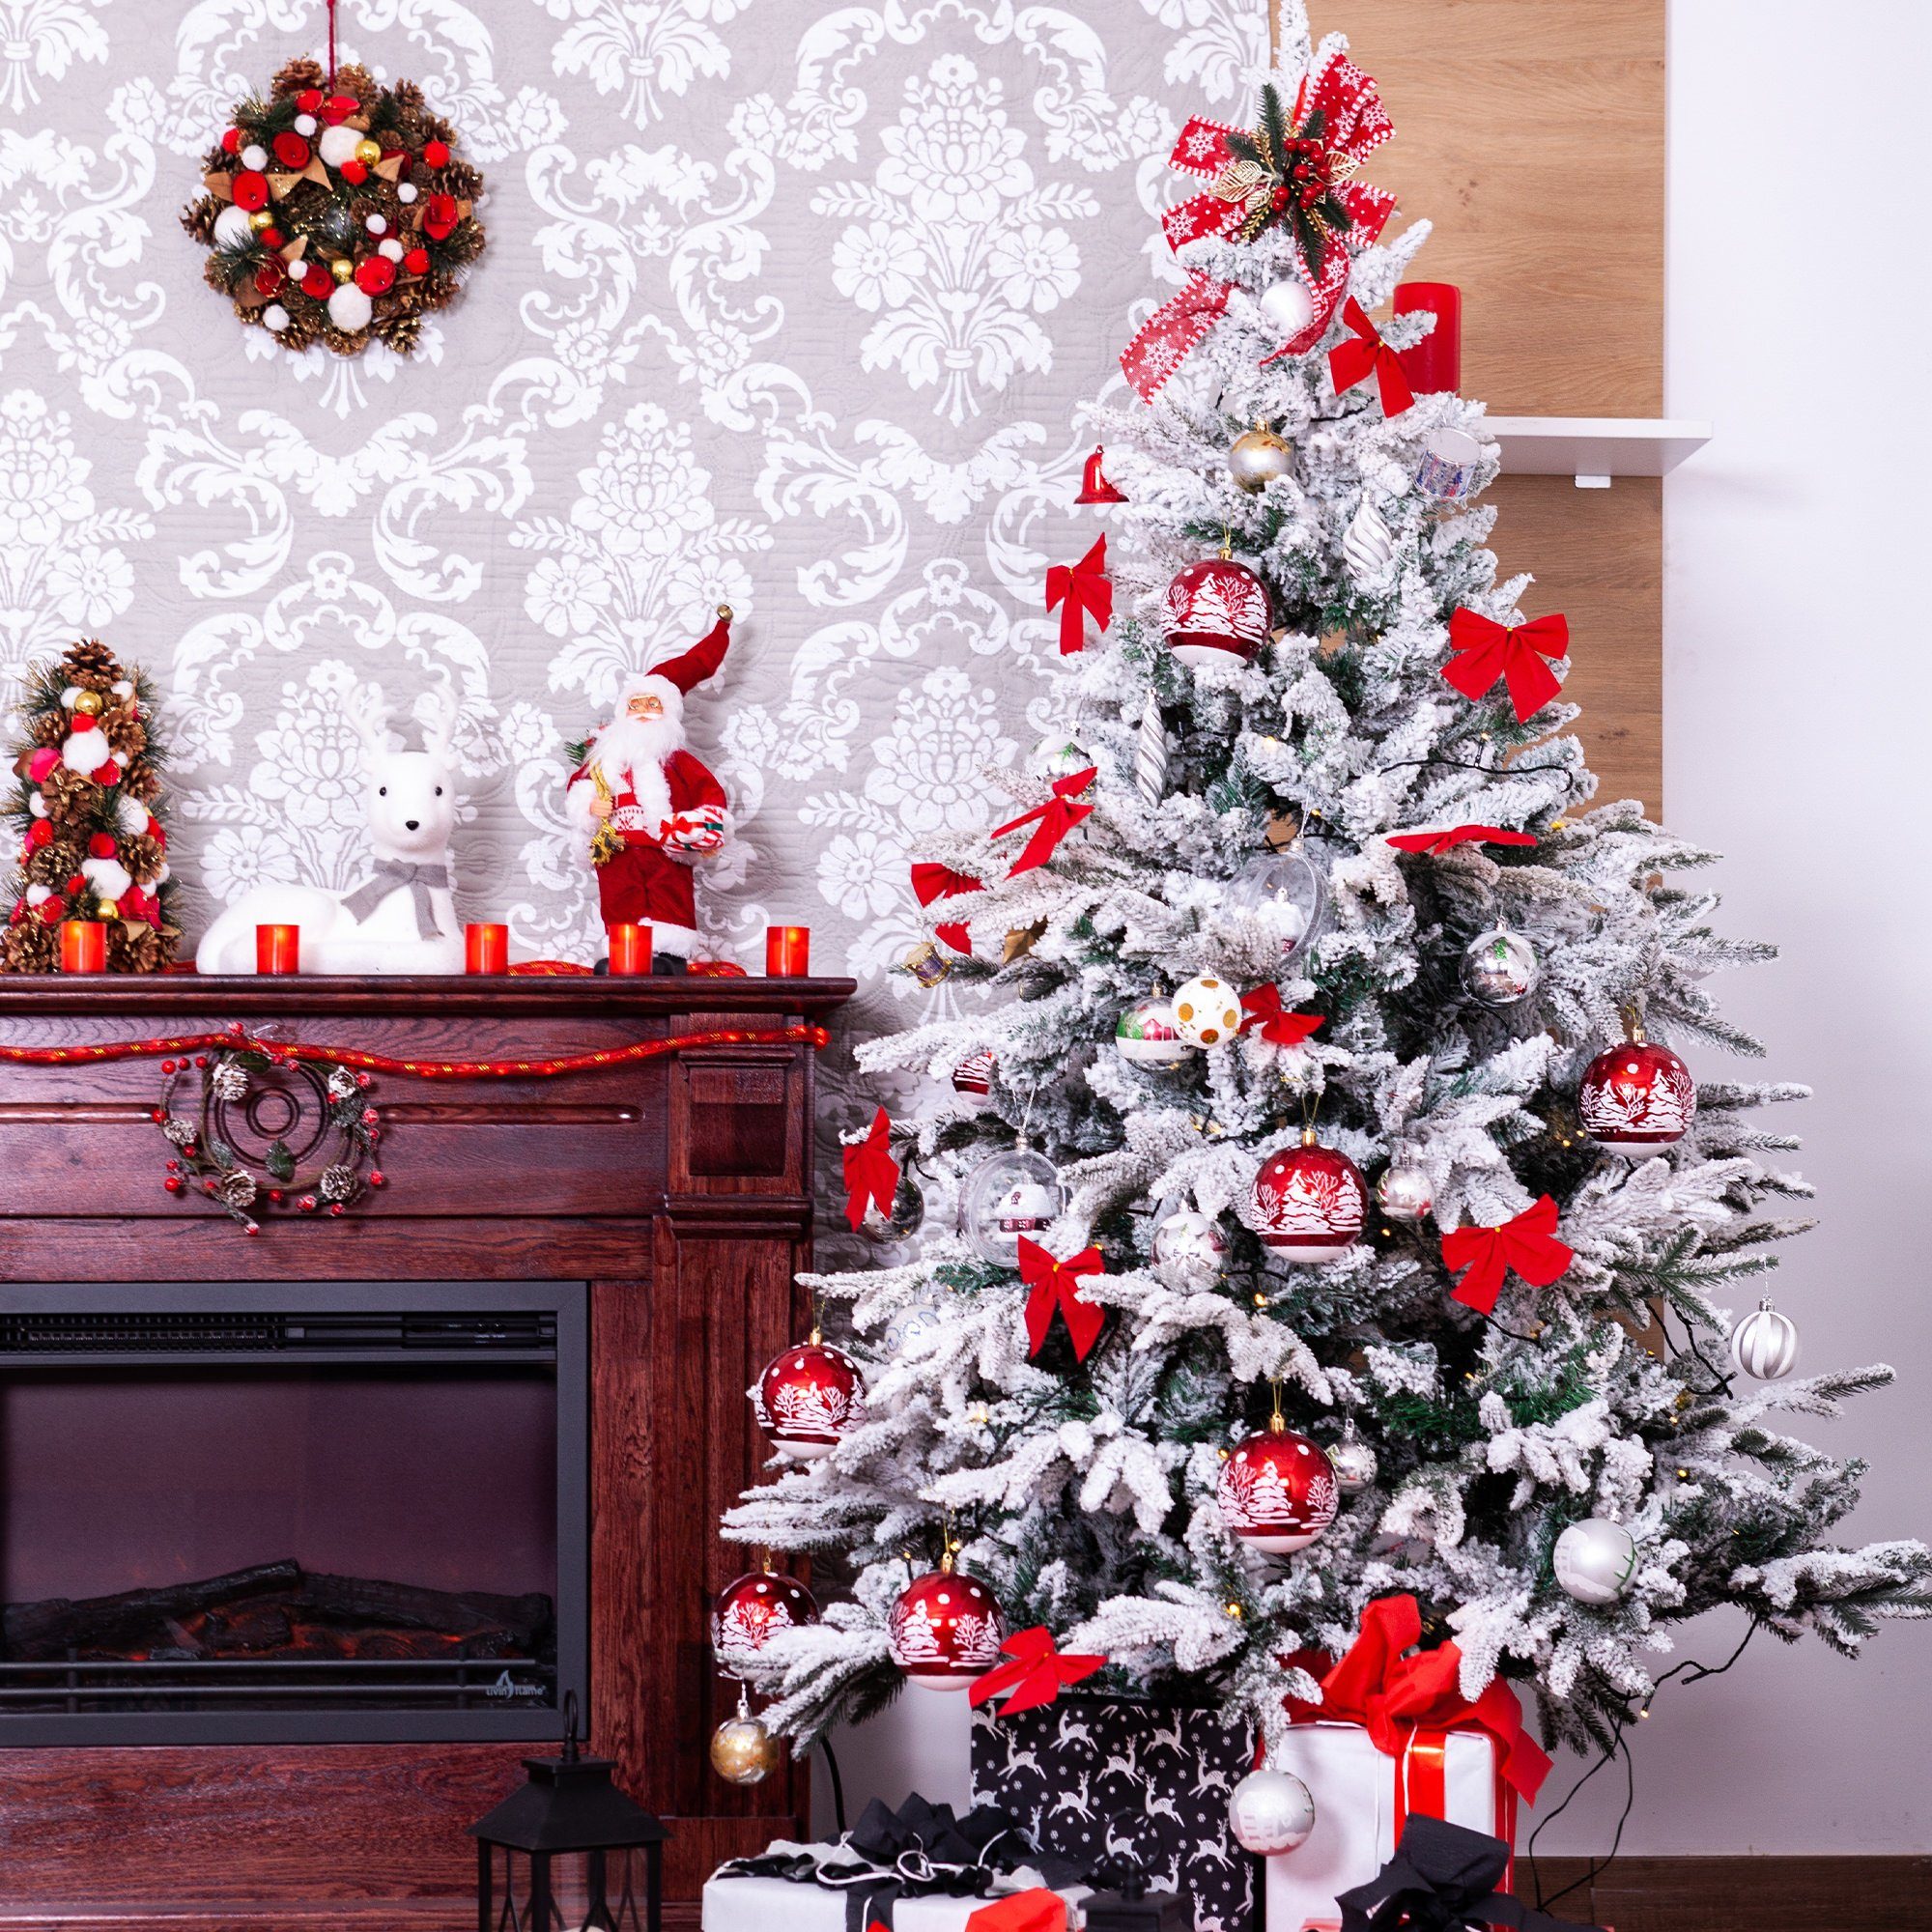 Urhome Künstlicher Weihnachtsbaum Ständer mit Weihnachtsbaum Urhome Künstlicher Weiß